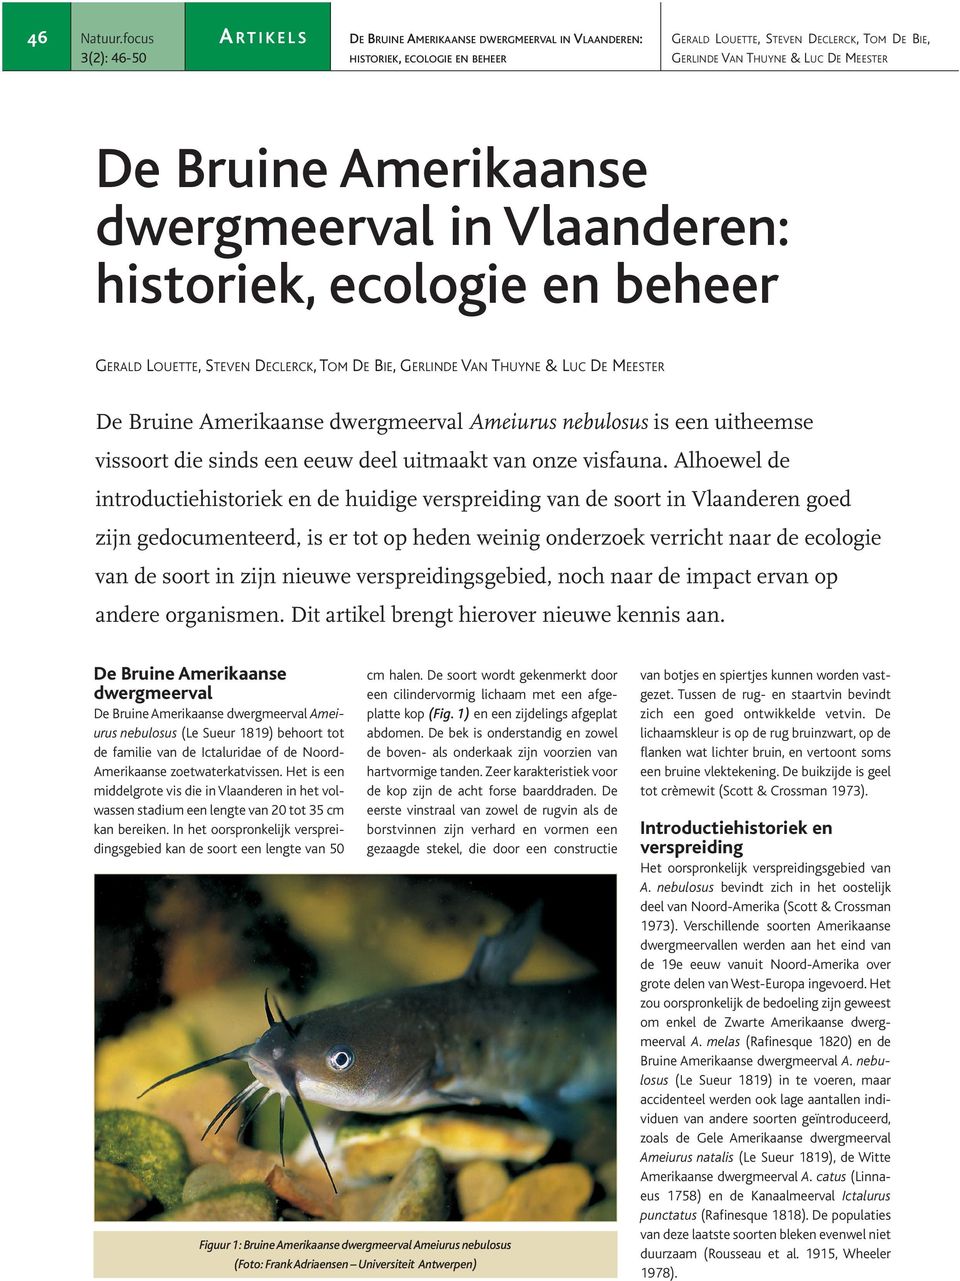 Alhoewel de introductiehistoriek en de huidige verspreiding van de soort in Vlaanderen goed zijn gedocumenteerd, is er tot op heden weinig onderzoek verricht naar de ecologie van de soort in zijn